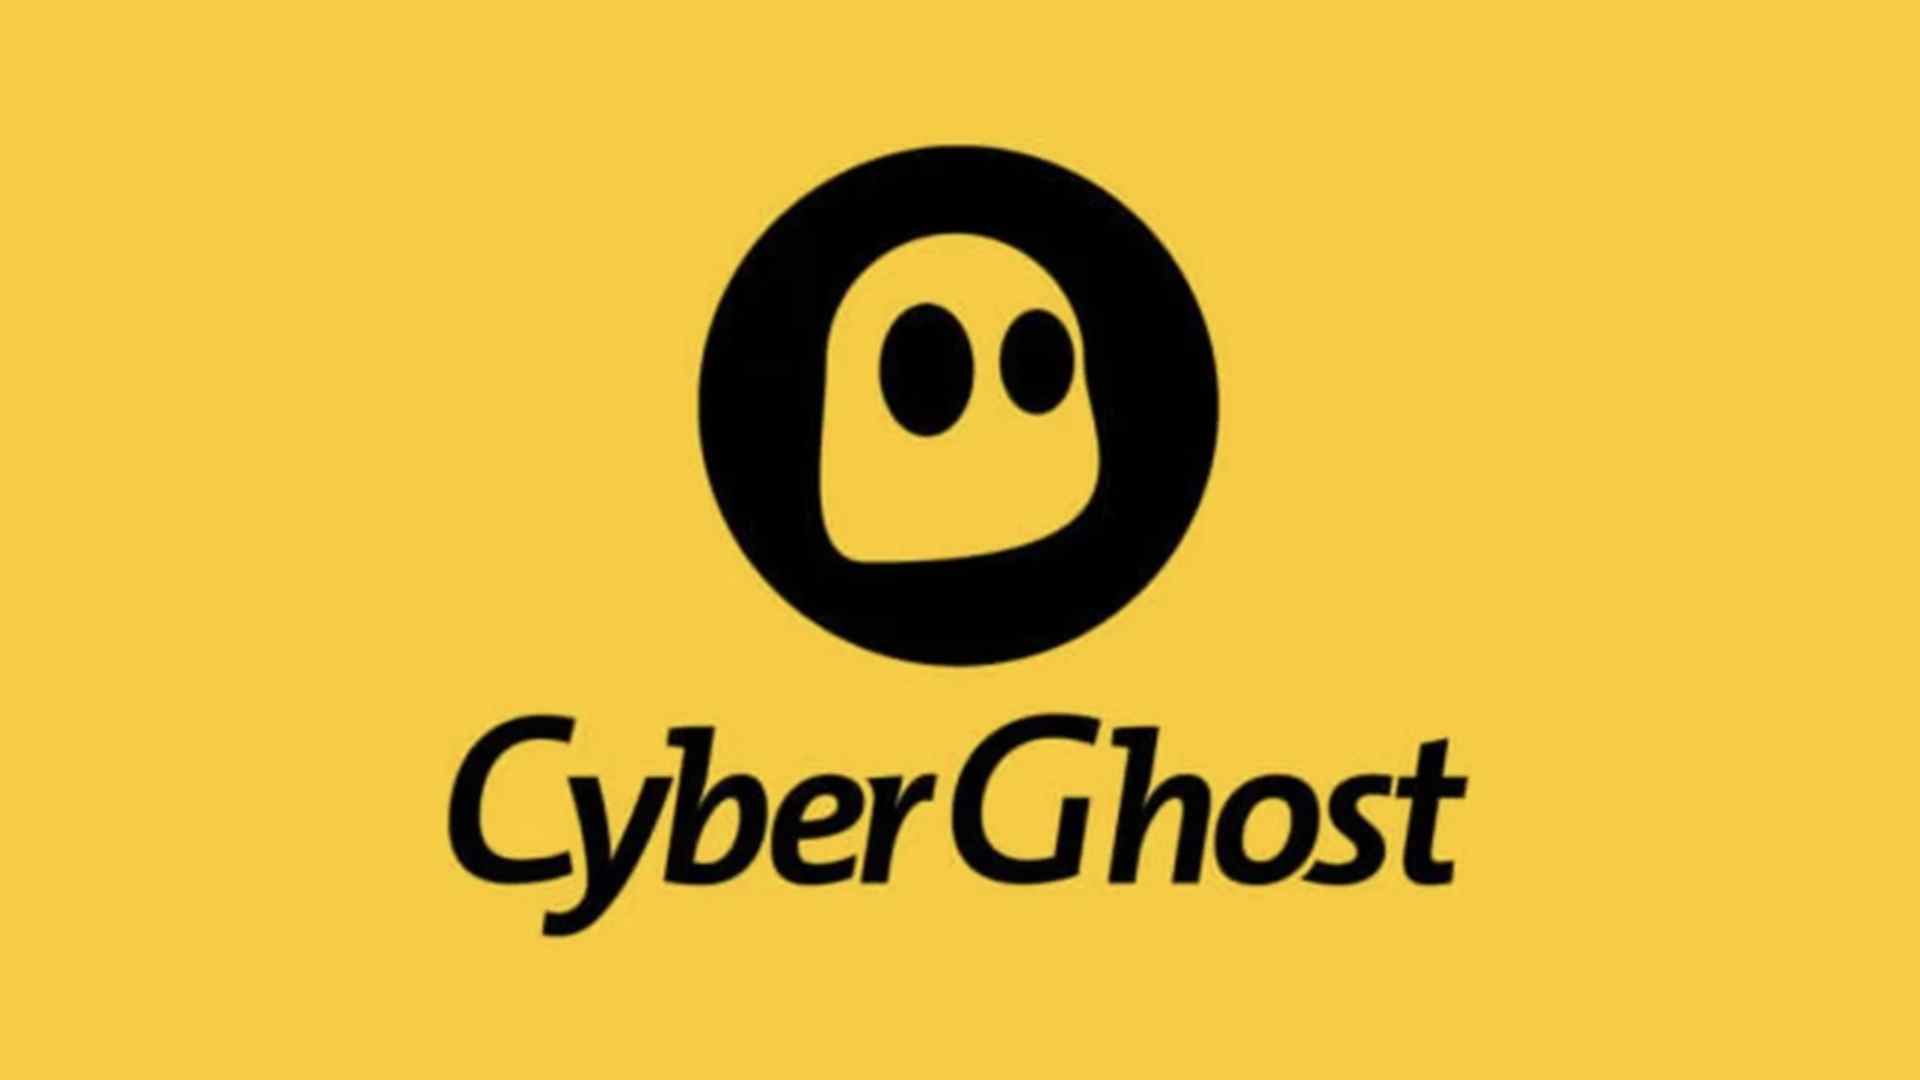 Meilleure option VPN bon marché numéro 4, CyberGhost.  L'image montre son logo sur un fond jaune.